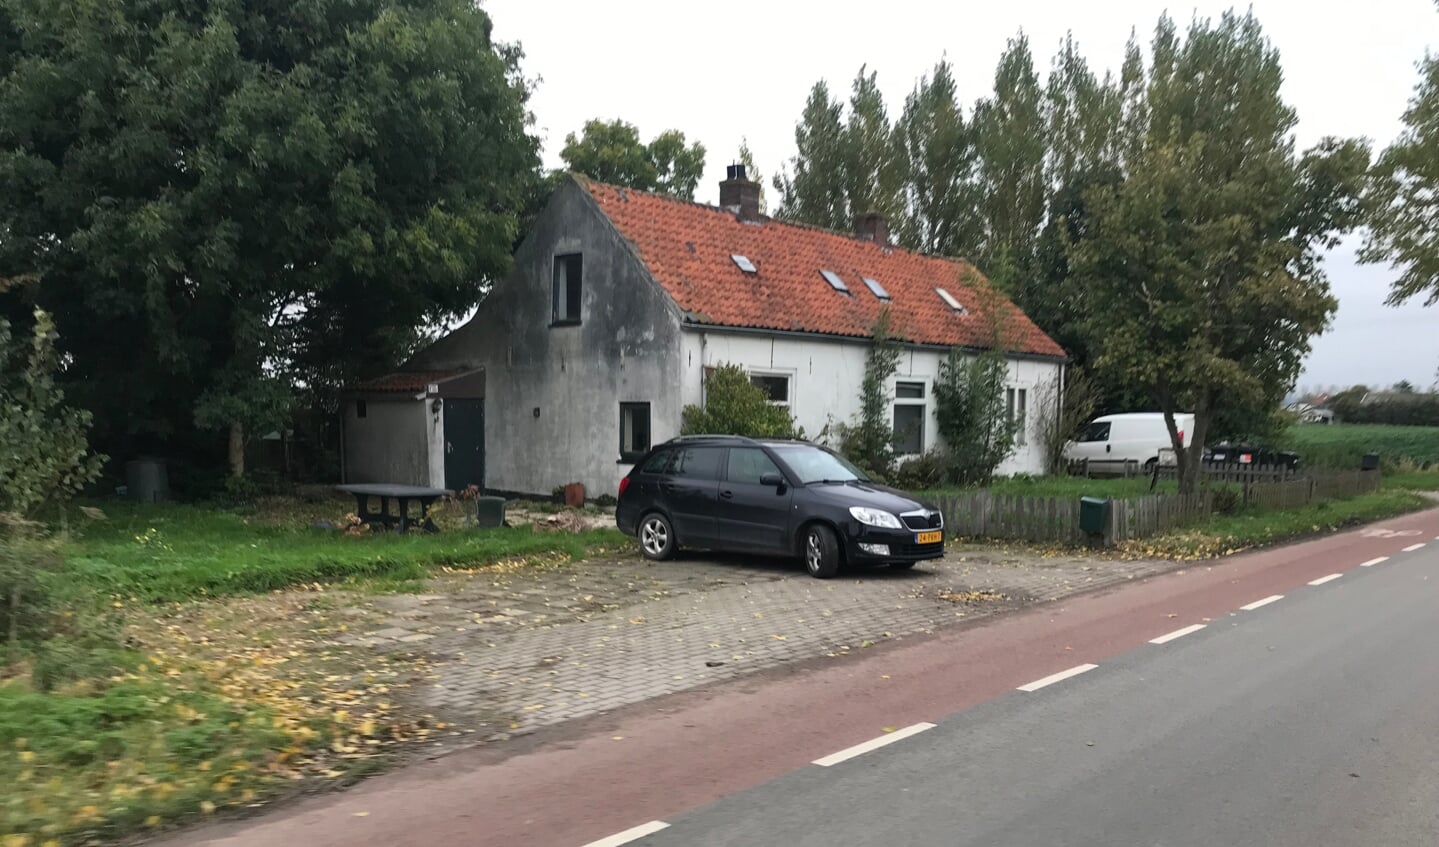 Rijnlanderweg.